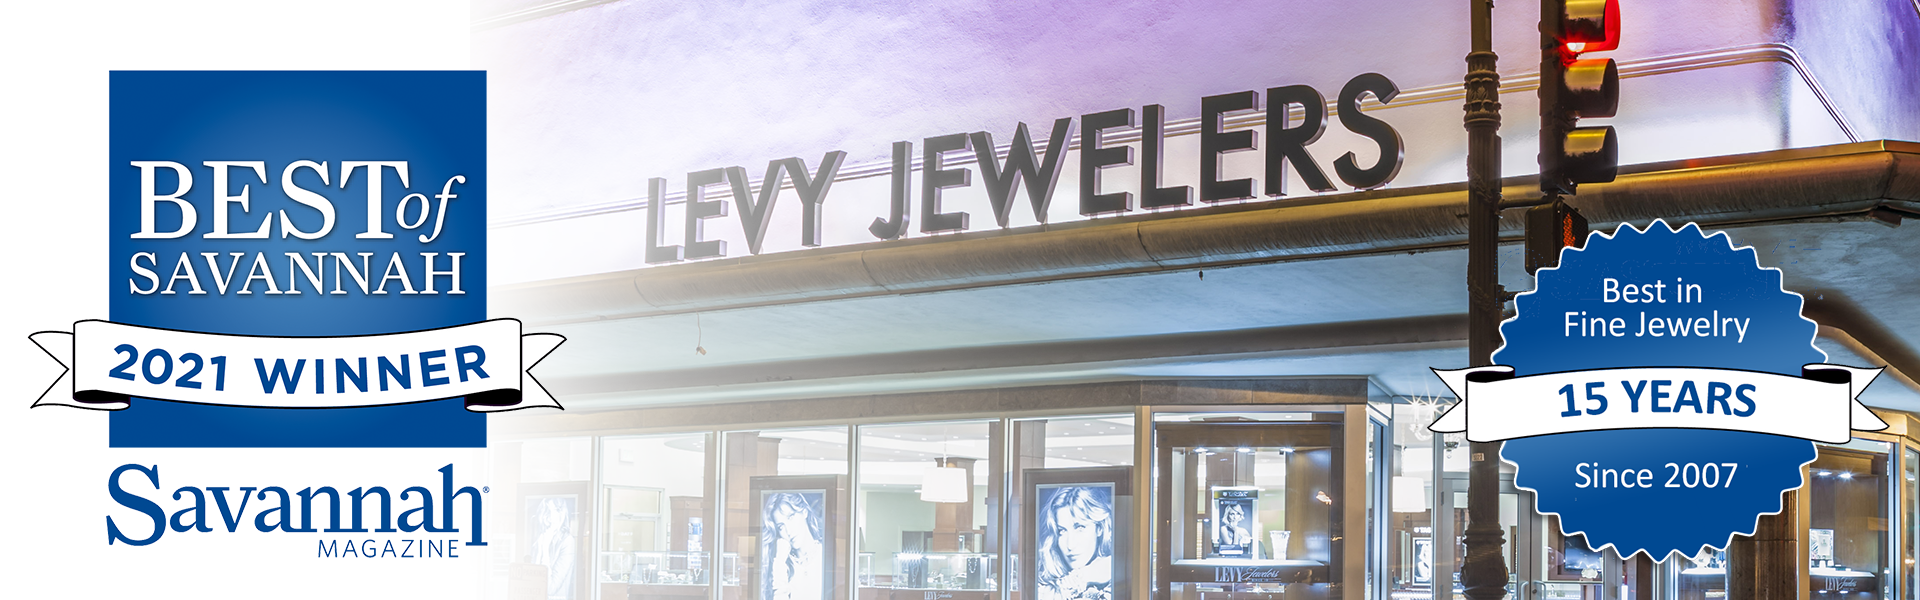 Levy Jewelers Best in Savannah